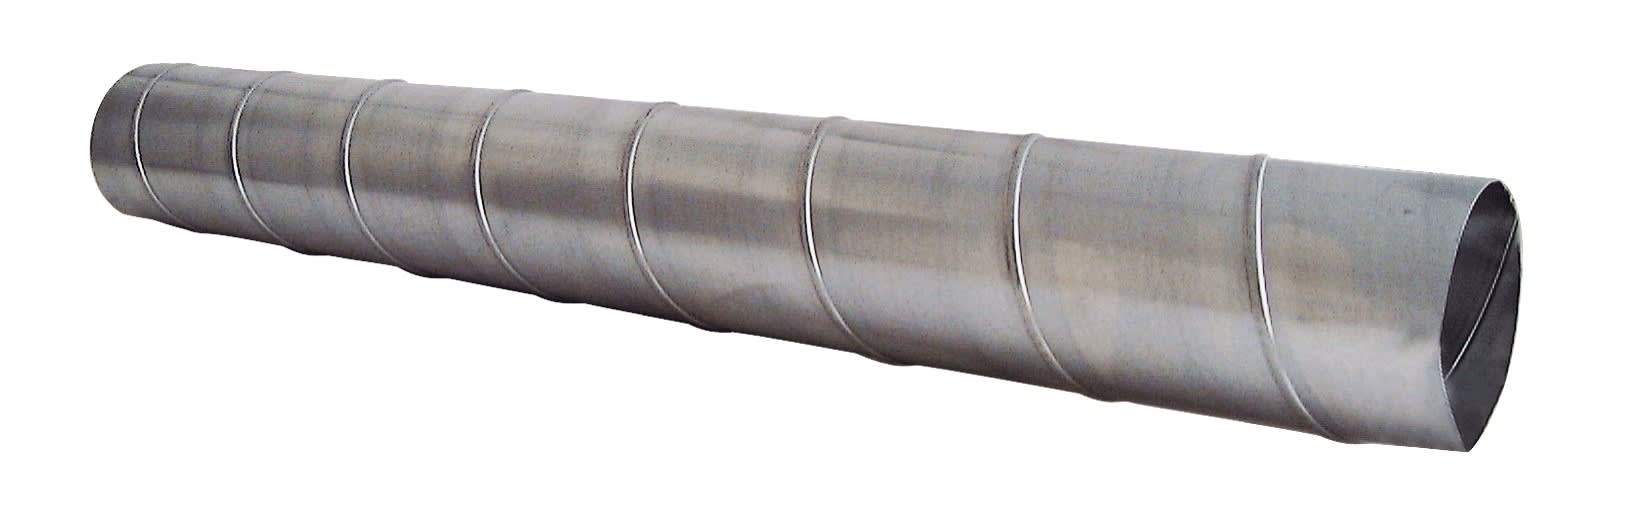 S&P - Conduit spiralé acier galvanisé, D 200 mm, longueur 3 m